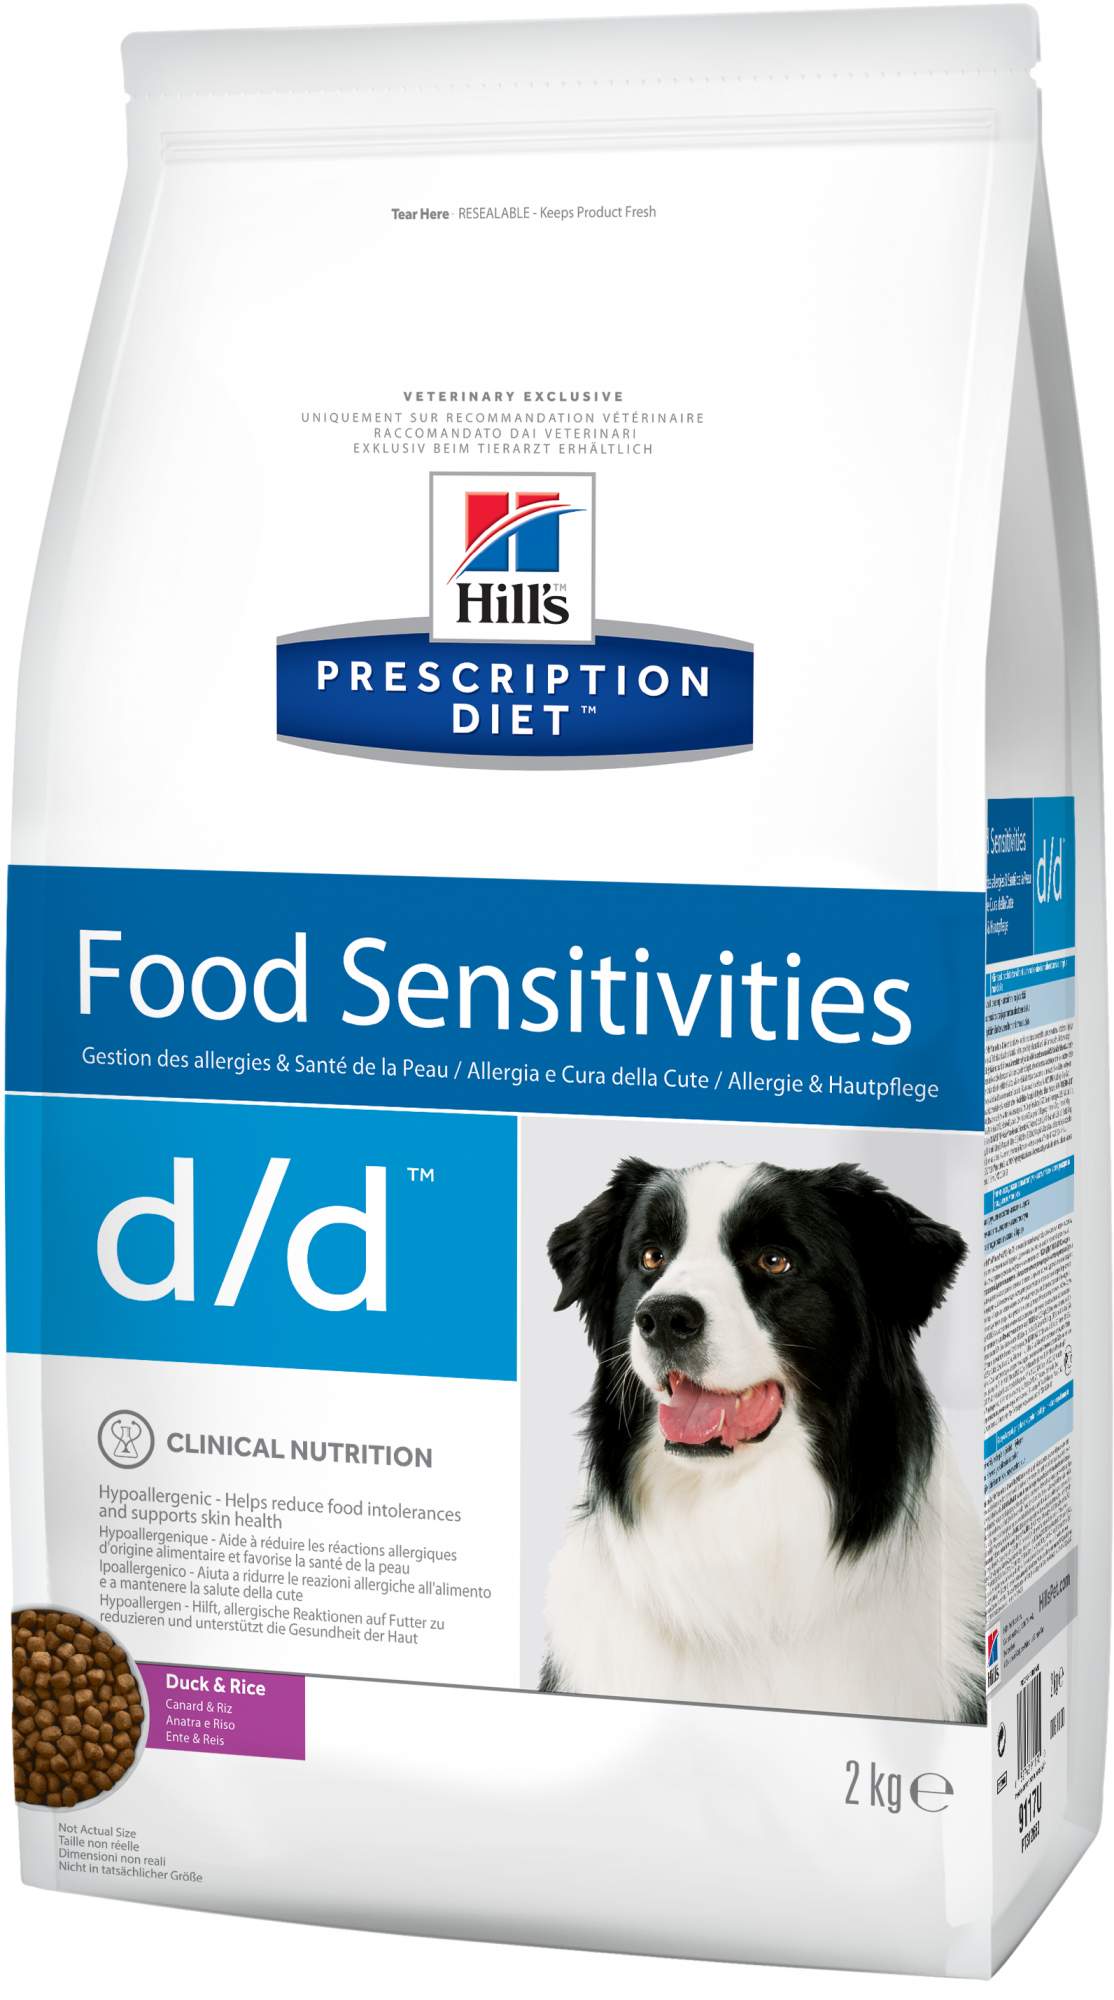 Сухой корм для собак Hill's Prescription Diet d/d Food Sensitivities, утка, 2кг